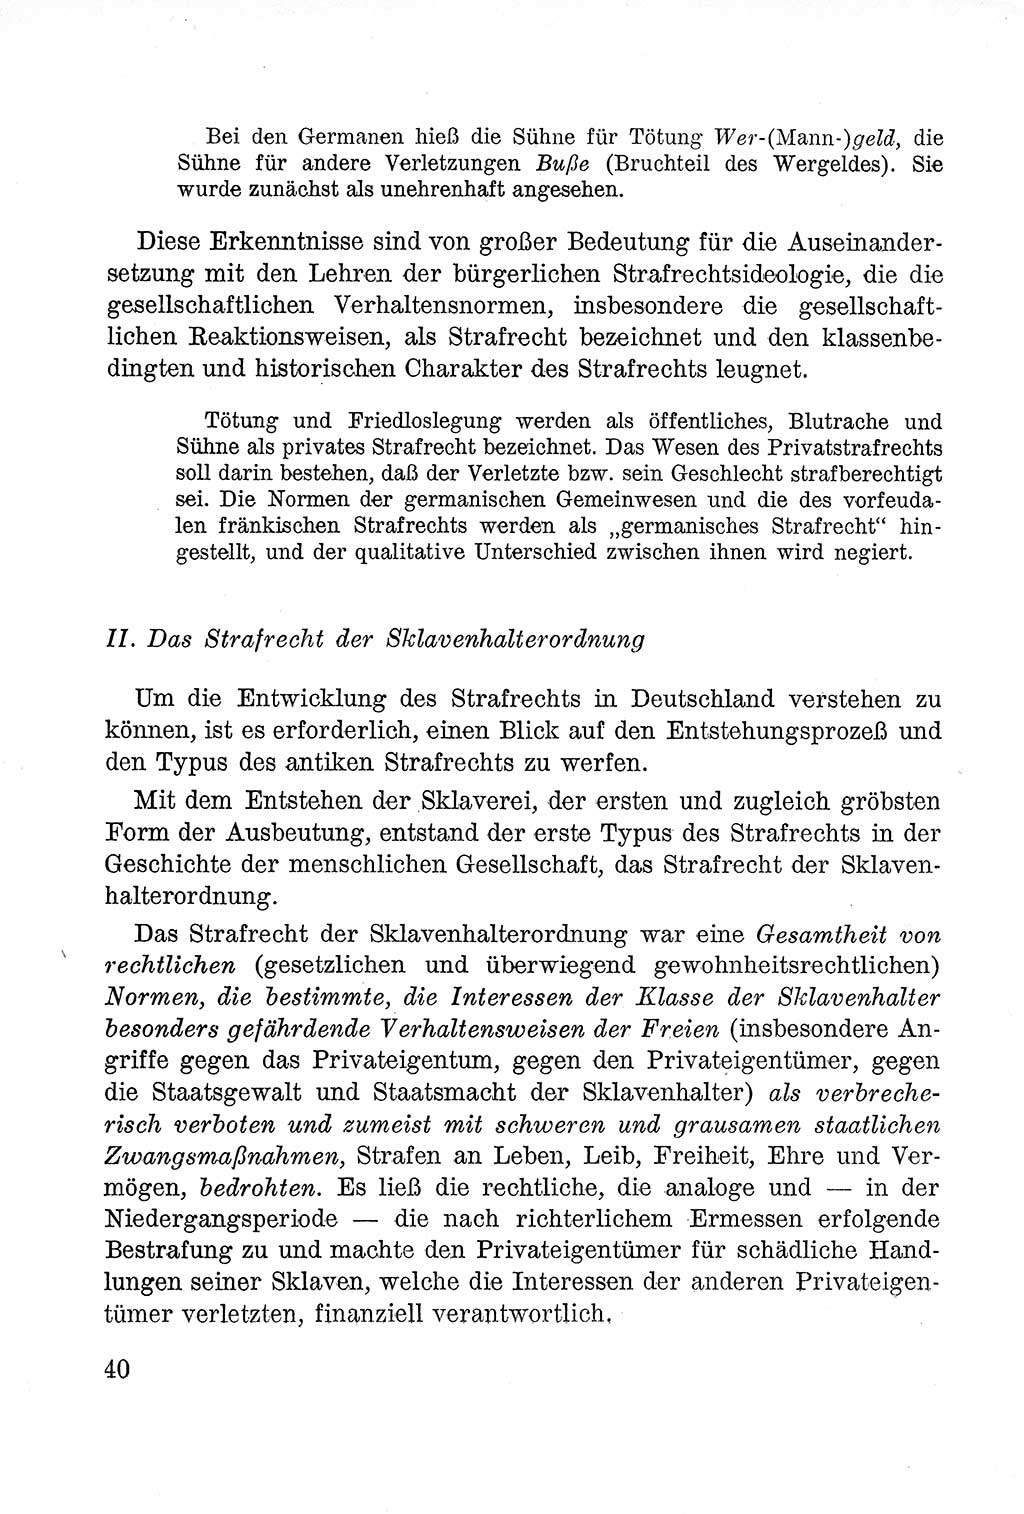 Lehrbuch des Strafrechts der Deutschen Demokratischen Republik (DDR), Allgemeiner Teil 1957, Seite 40 (Lb. Strafr. DDR AT 1957, S. 40)